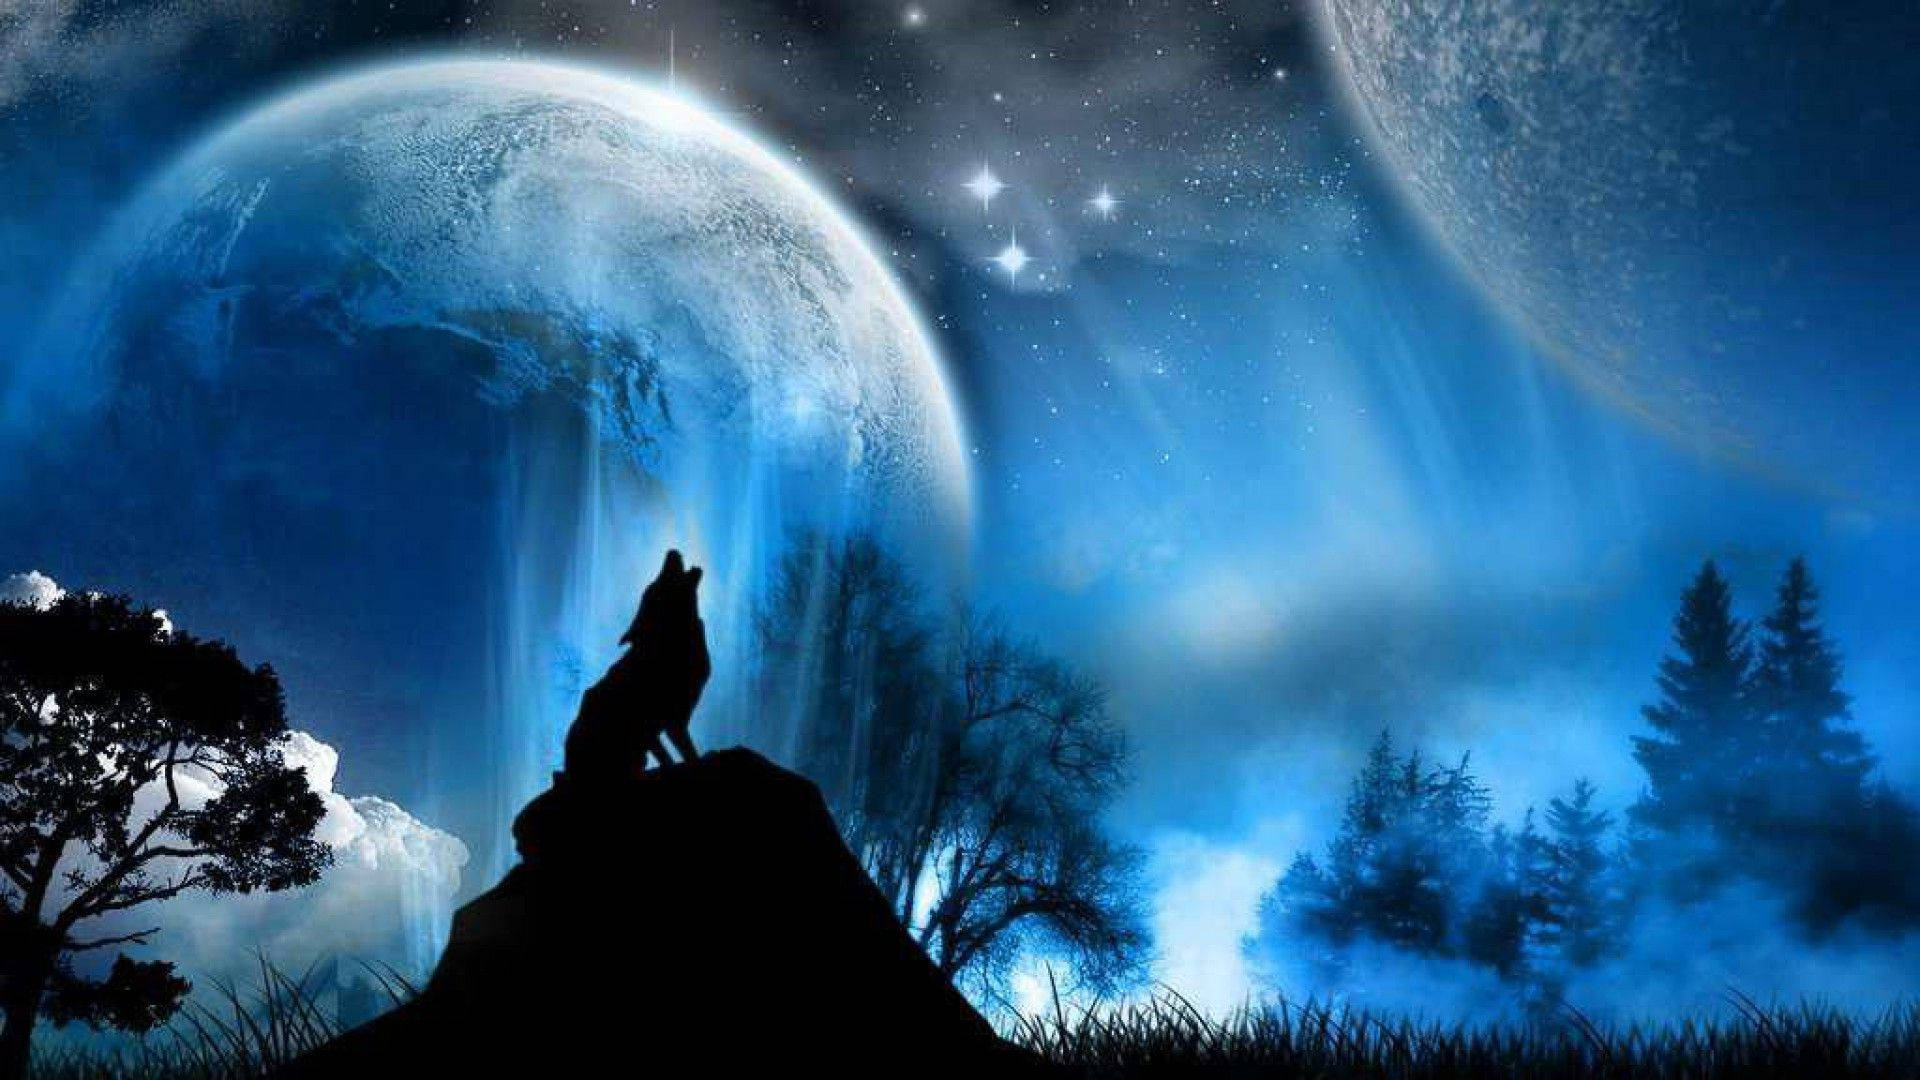 Howling Wolf Digital Art Wallpaper